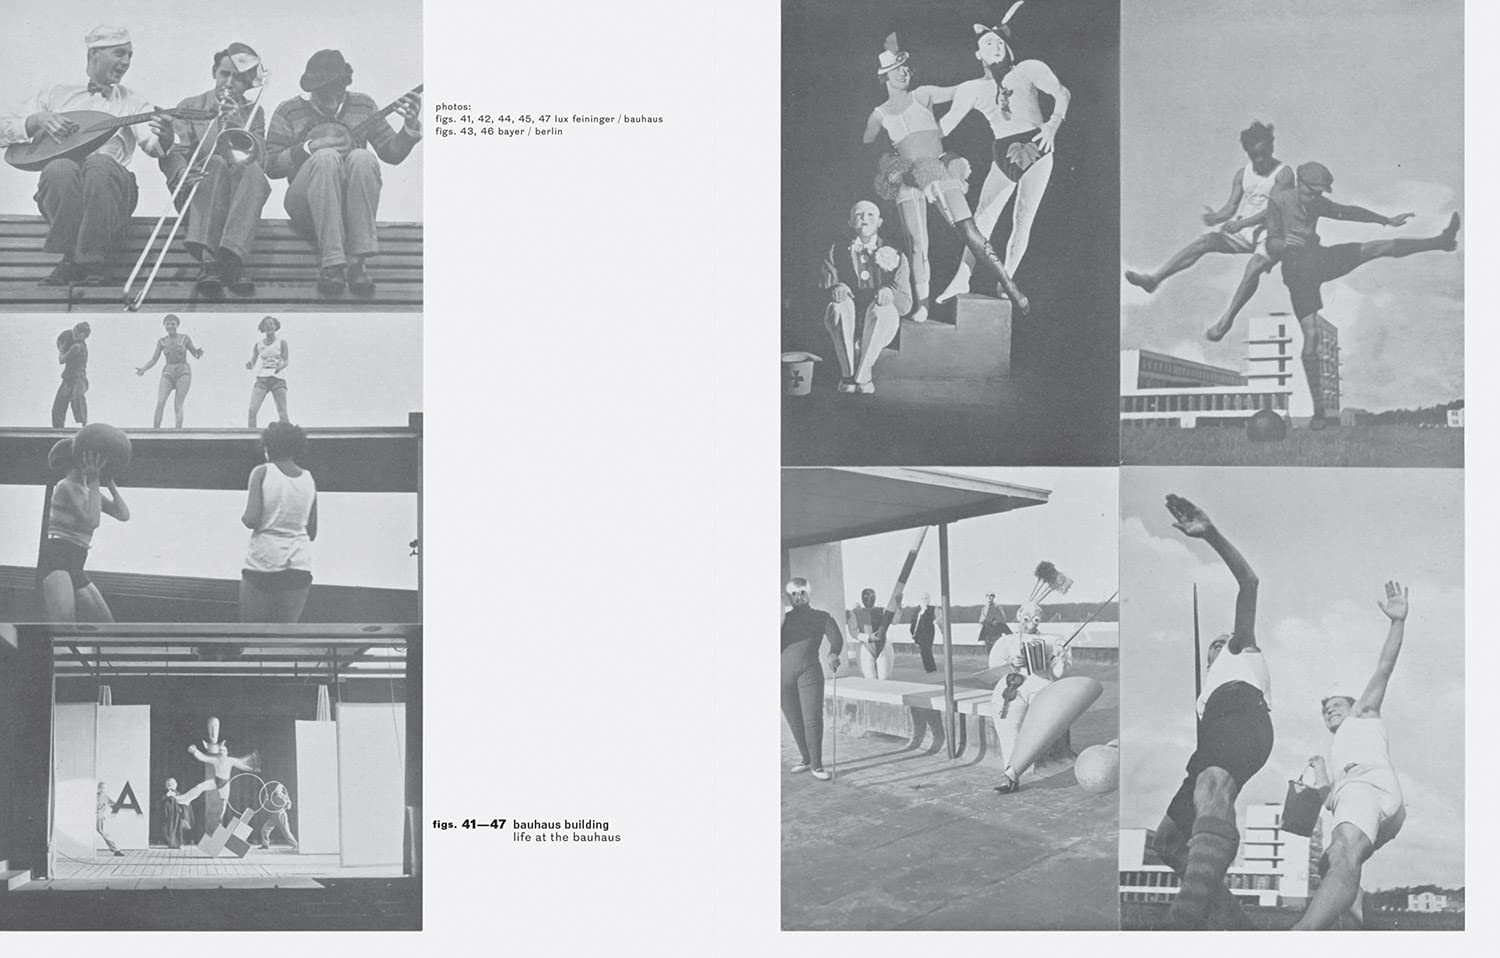 Walter Gropius: Bauhaus Buildings Dessau: Bauhausbücher 12 (Bauhausbücher, 12)